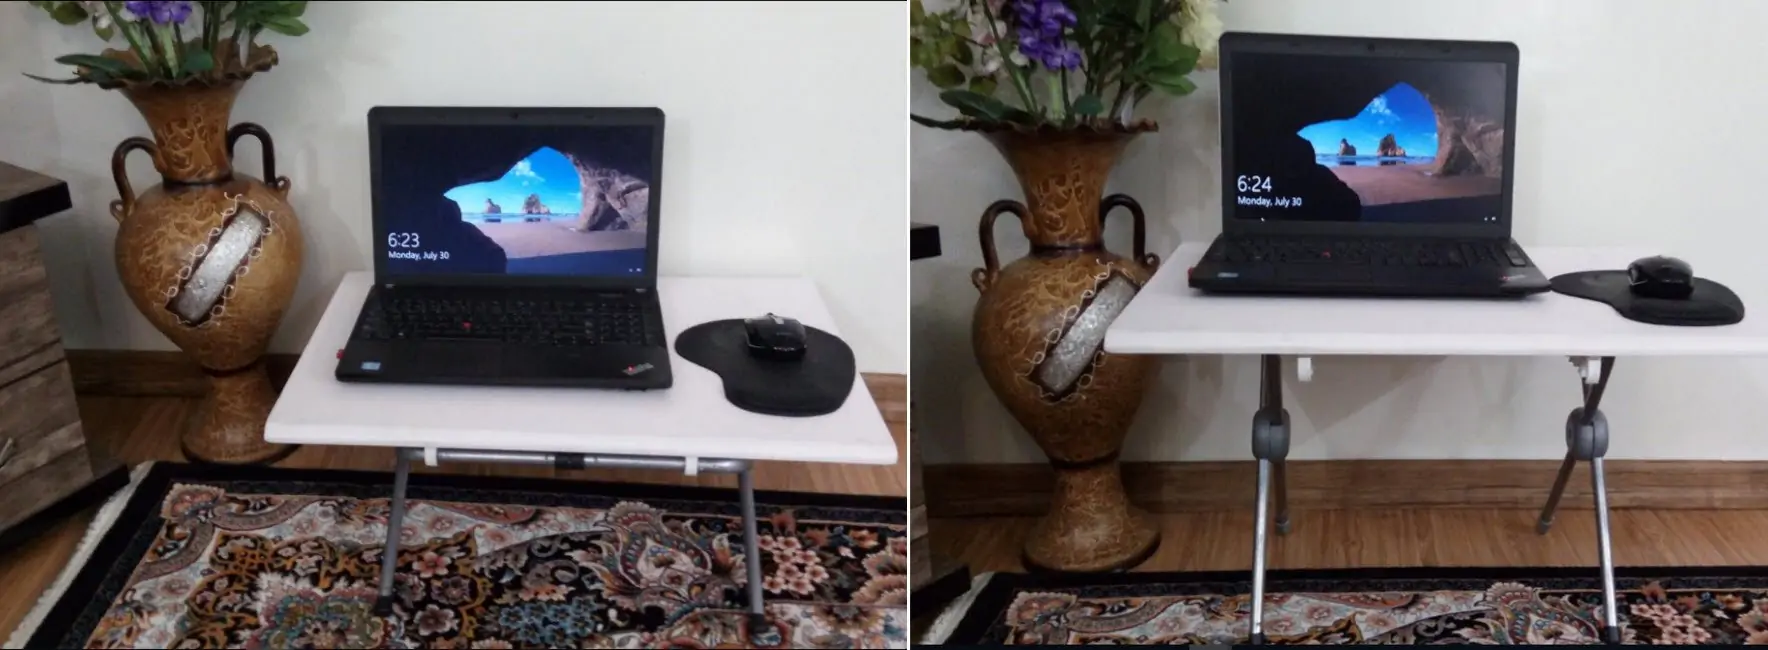 ساخت میز لپ تاپ تاشو و پرتابل با قابلیت تنظیم ارتفاع